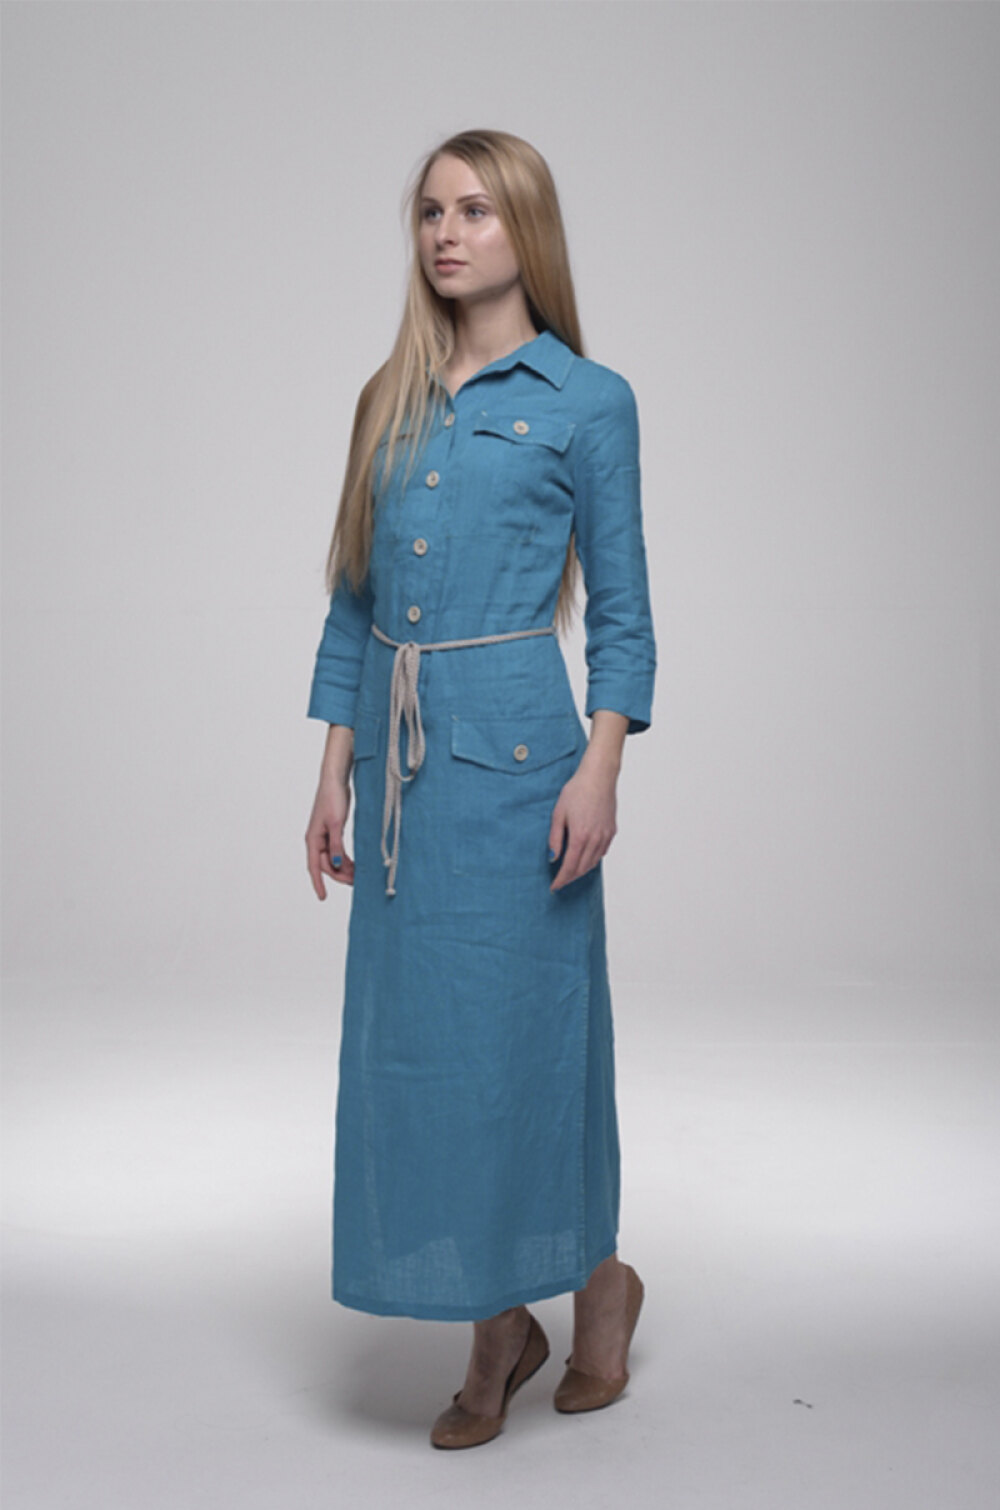 Платье женское "Элегант" длинное модель 427 бирюза